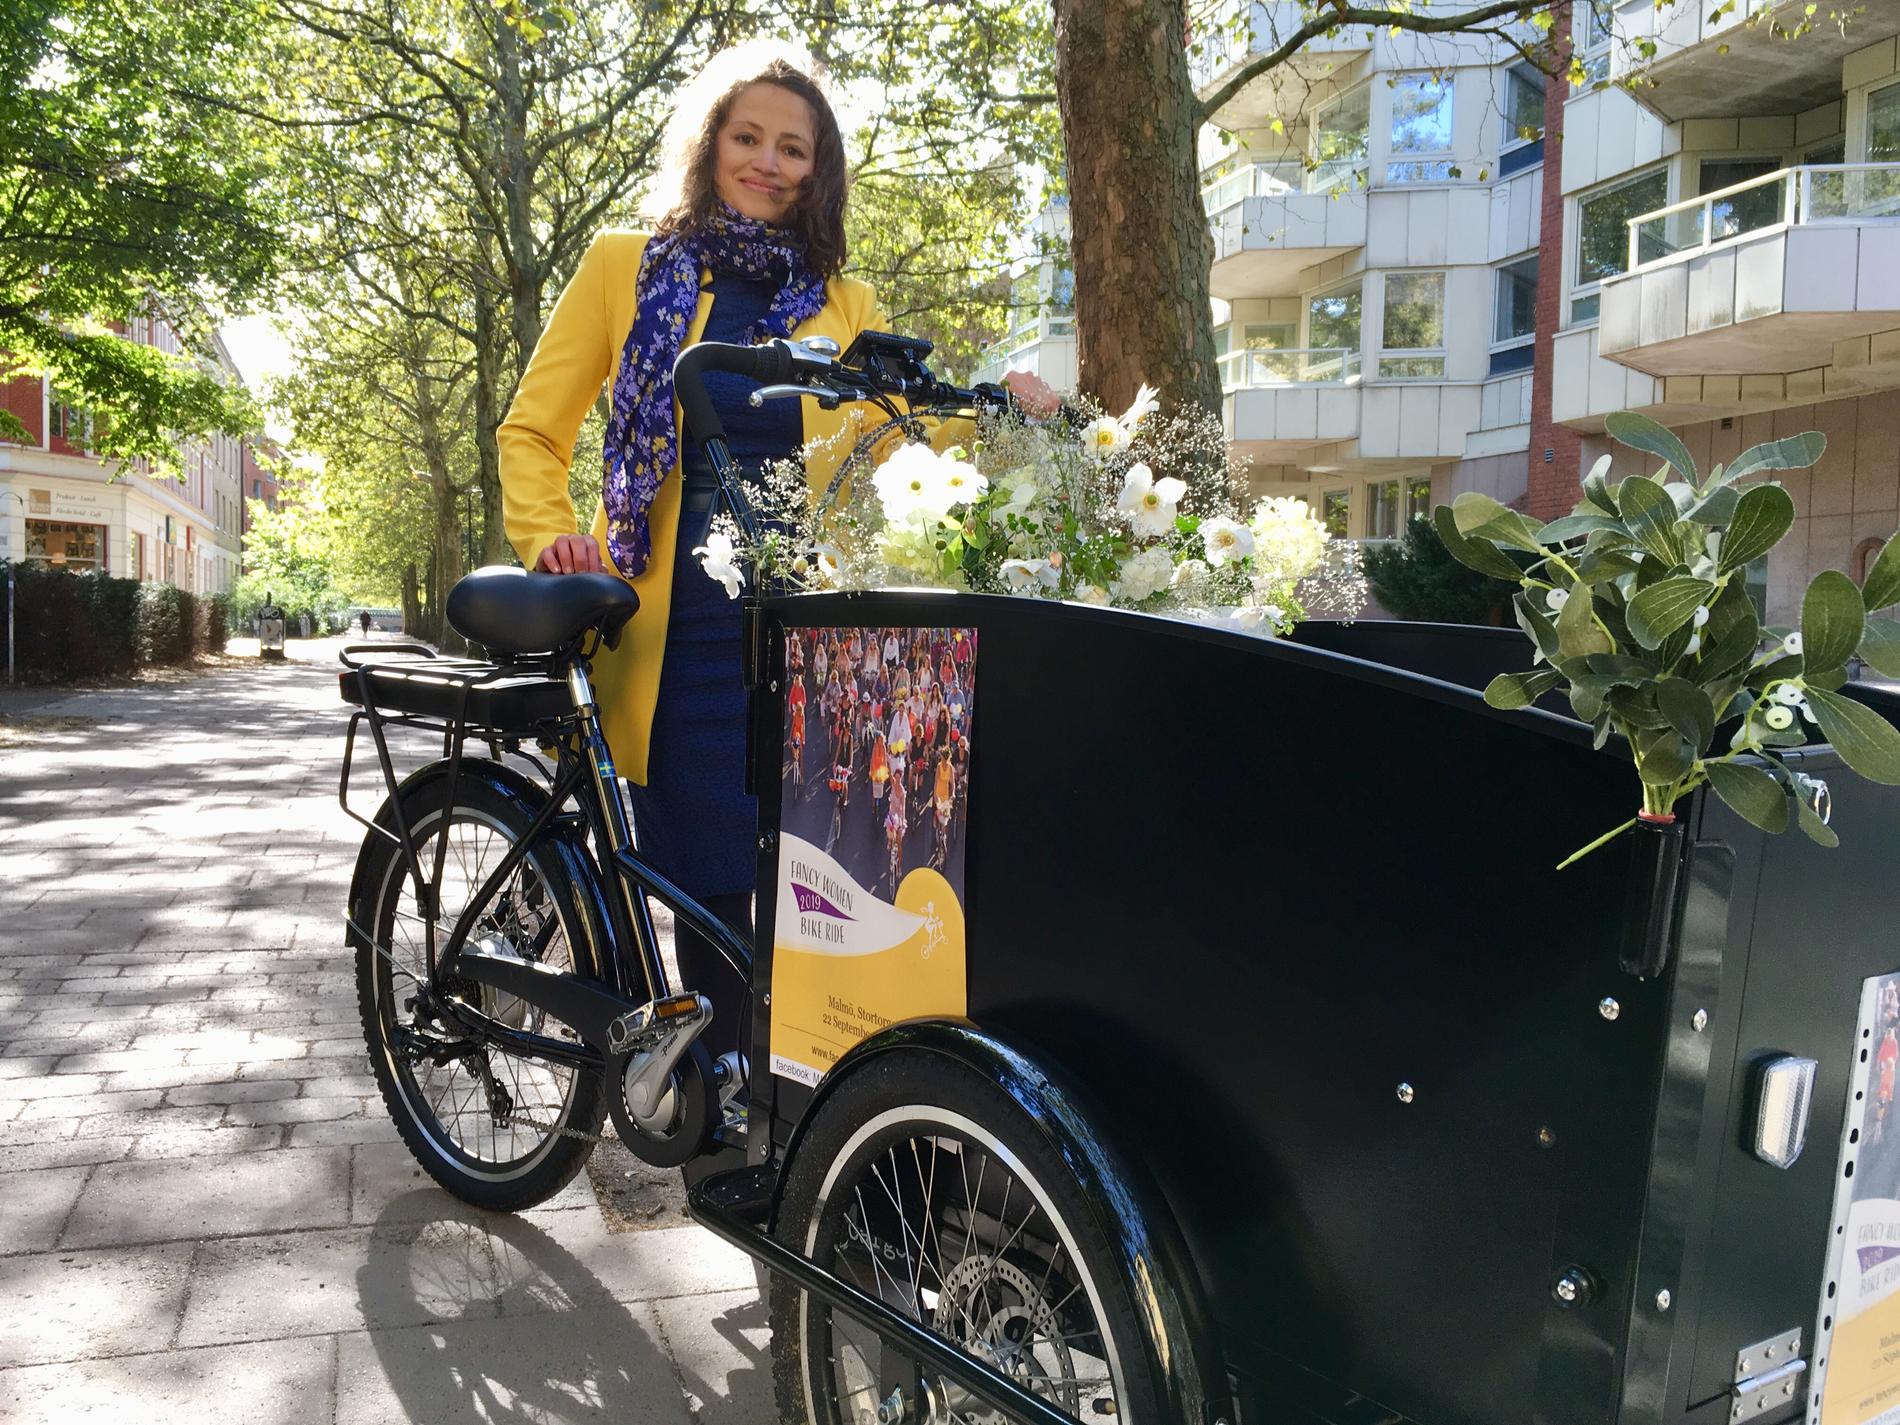 Vasvie Issa vill uppmuntra fler att cykla och göra det till en del av det dagliga livet.